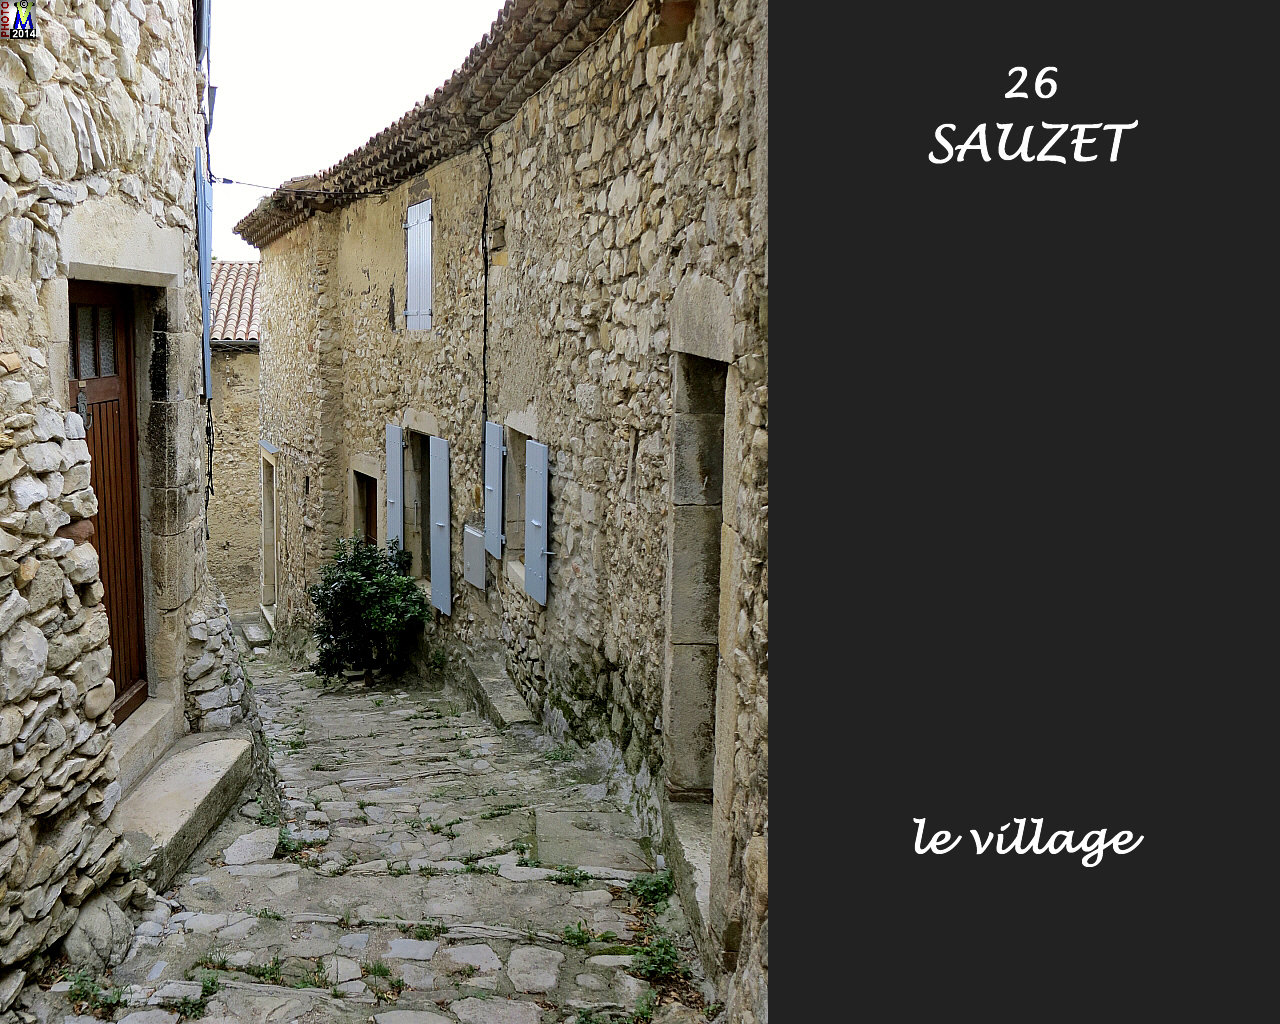 26SAUZET_village_128.jpg